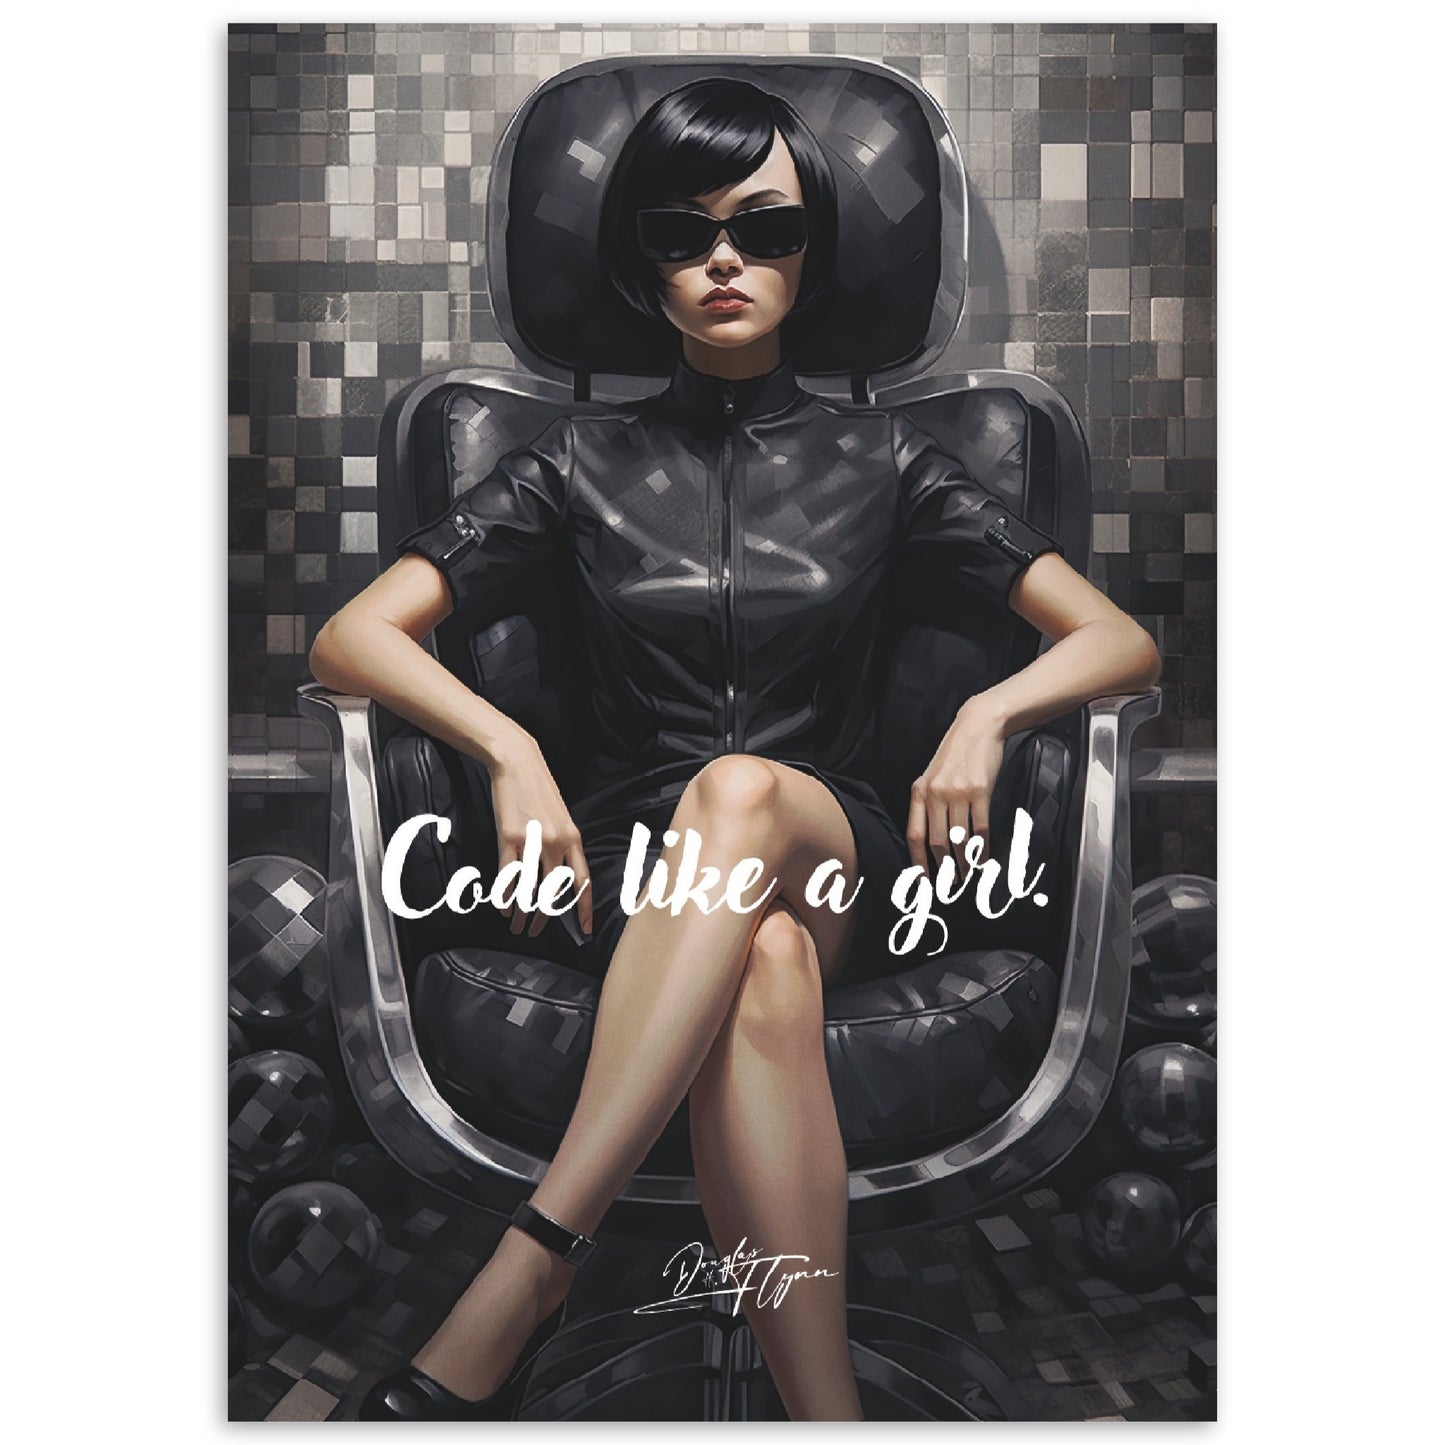 »Code like a girl«